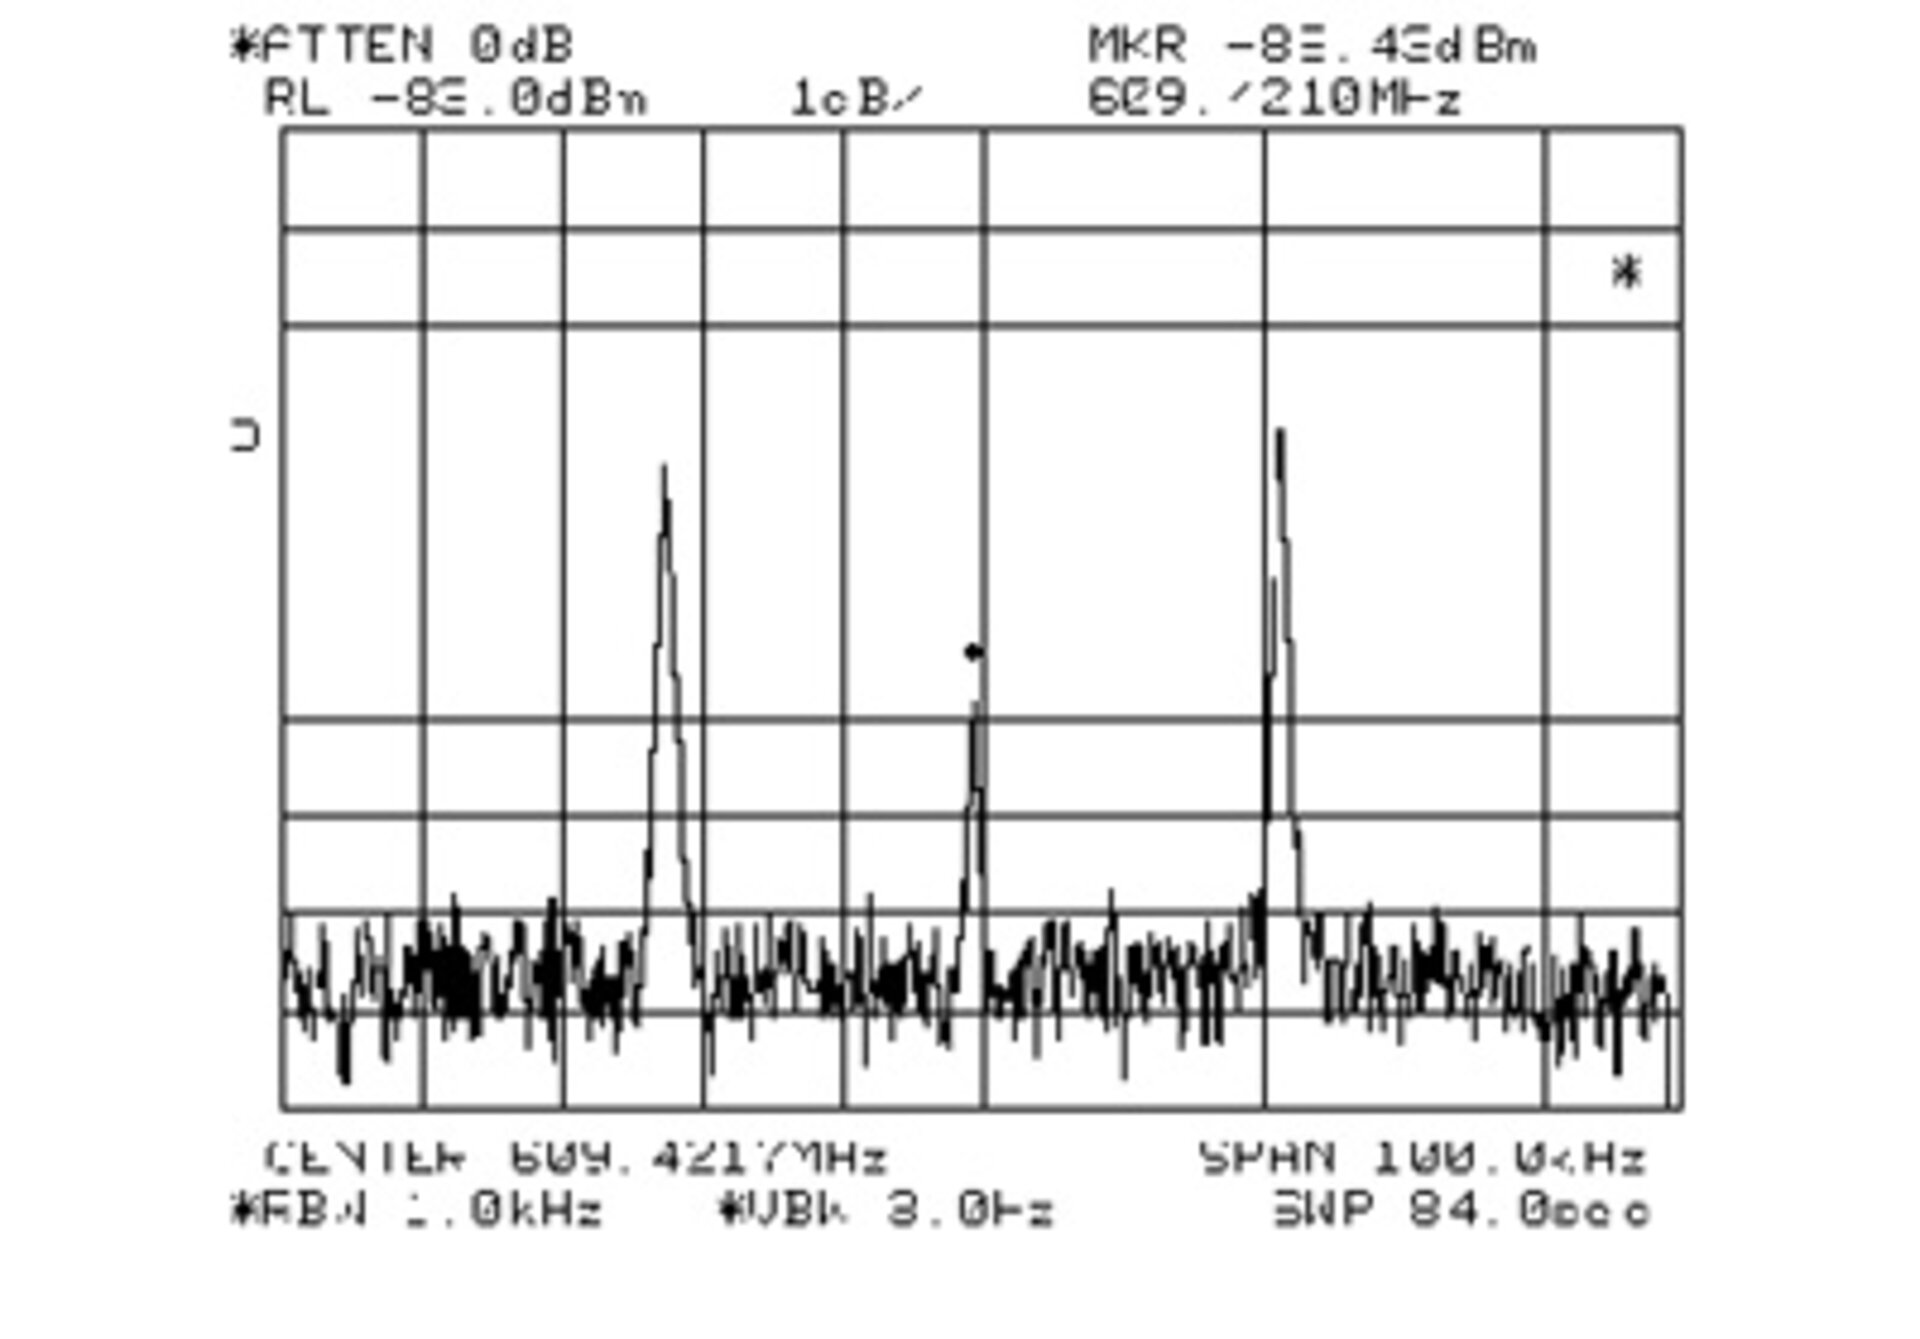 Die Spektralanalyse des ersten Stardust-Signals